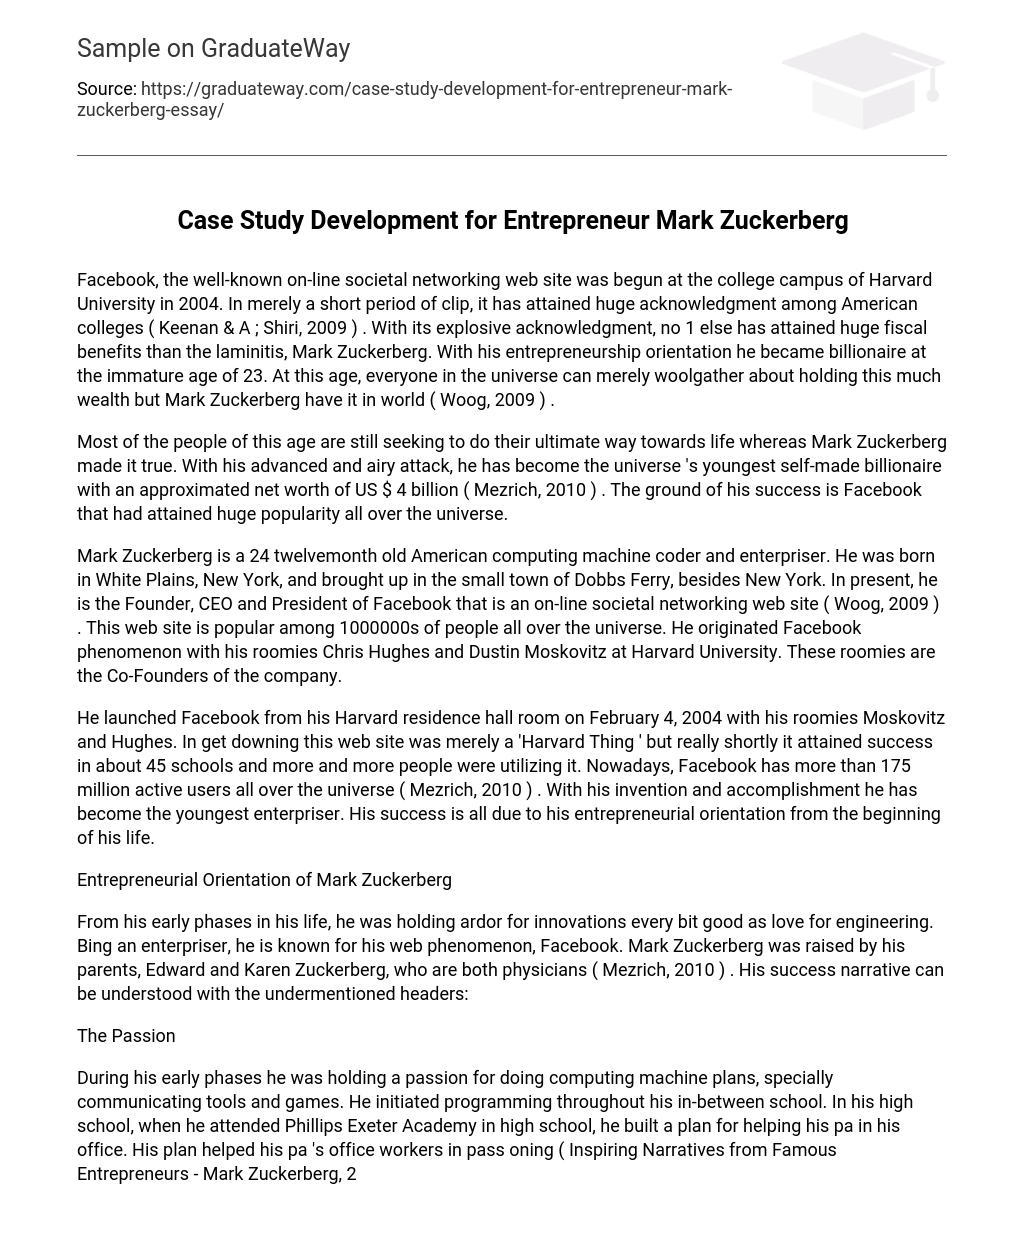 Case Study Development for Entrepreneur Mark Zuckerberg